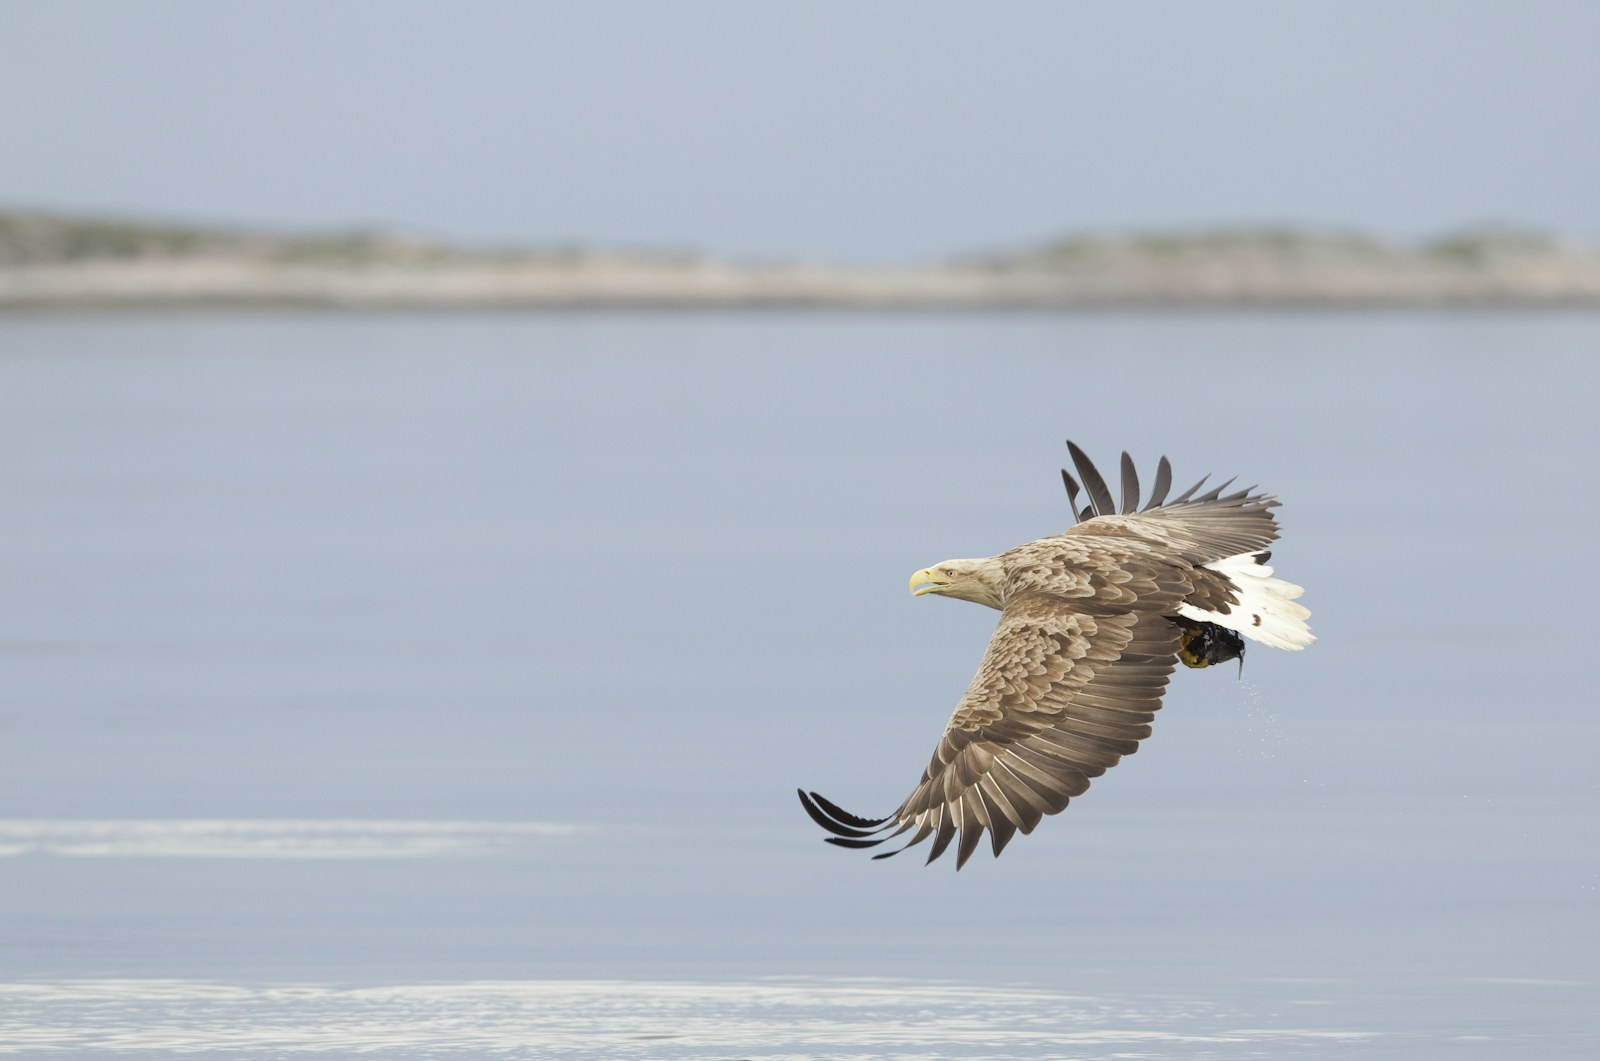 Eagle over the sea